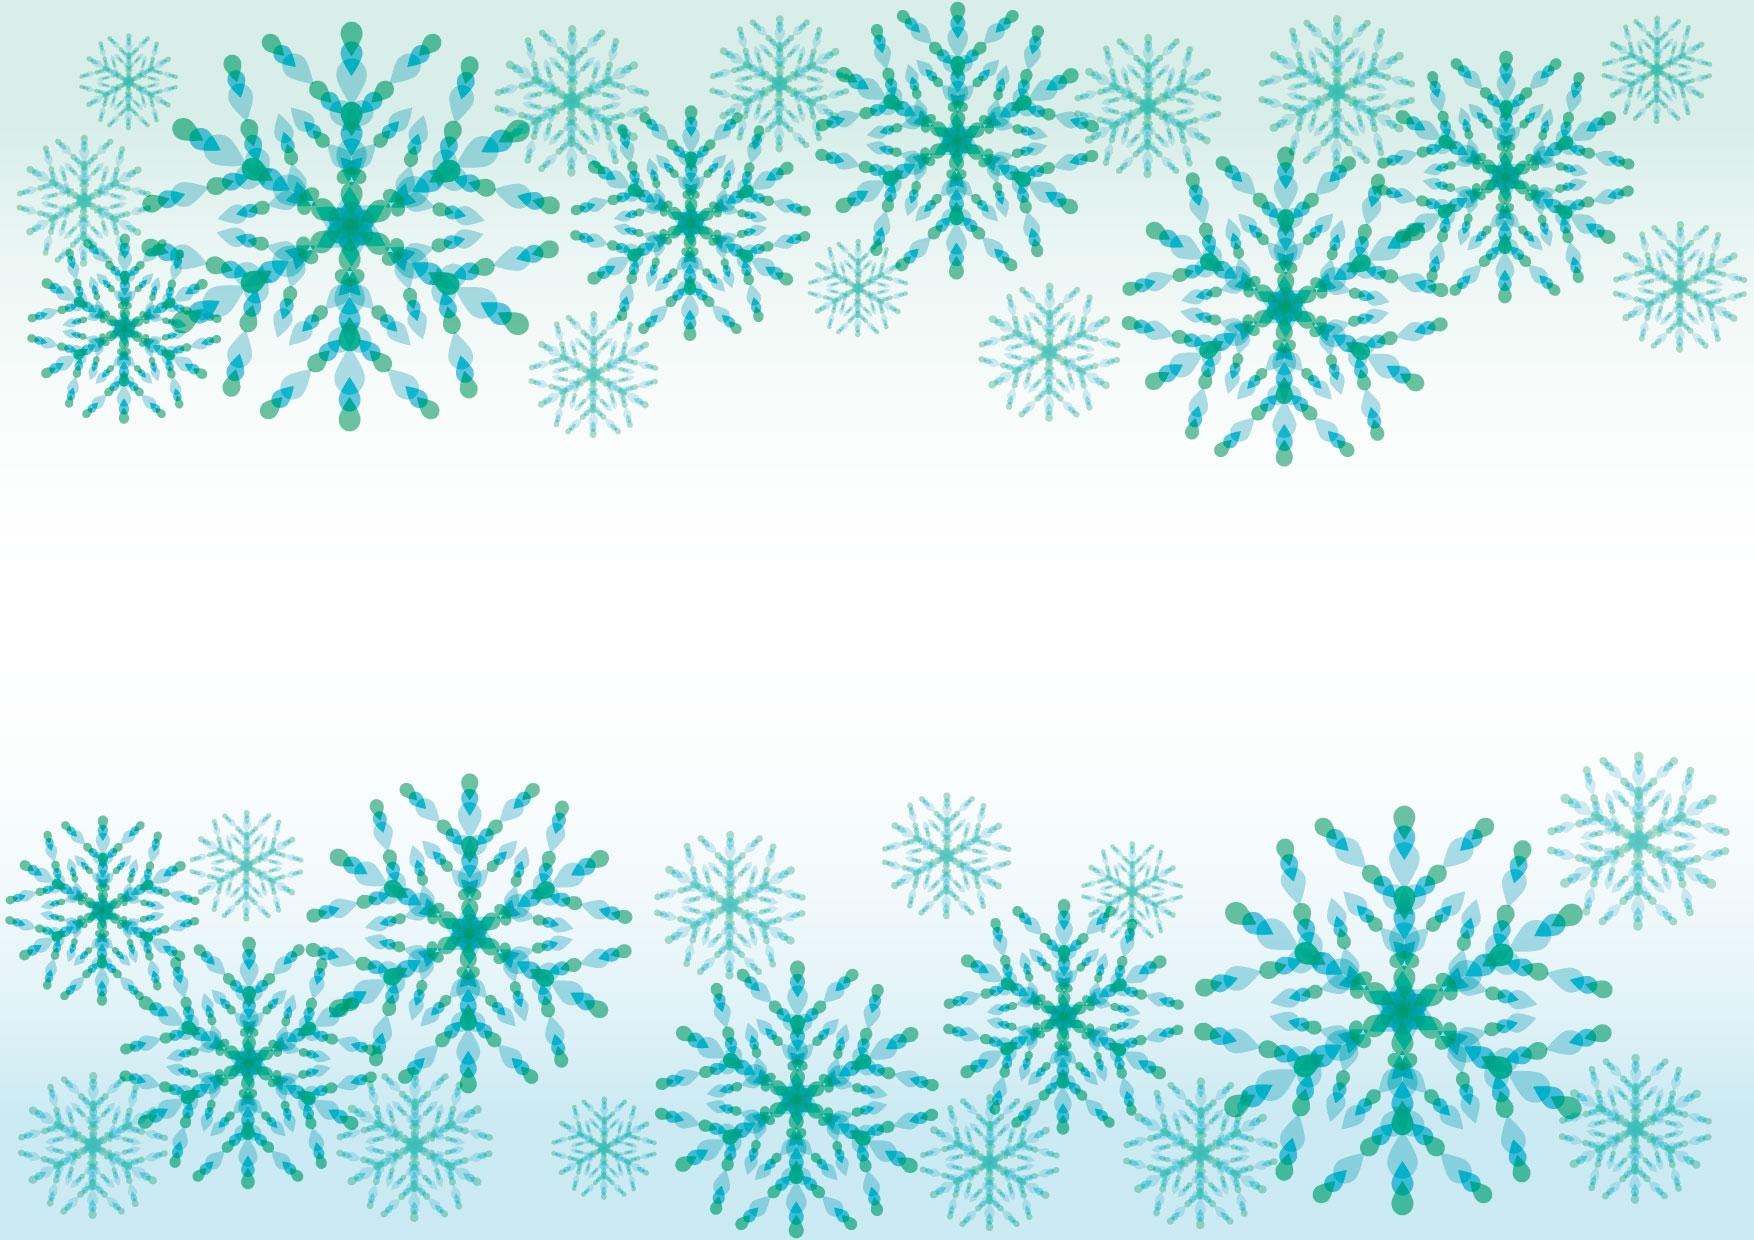 可愛いイラスト無料 雪の結晶 青 背景 Free Illustration Snowflakes Blue Background イラスト ダウンロード